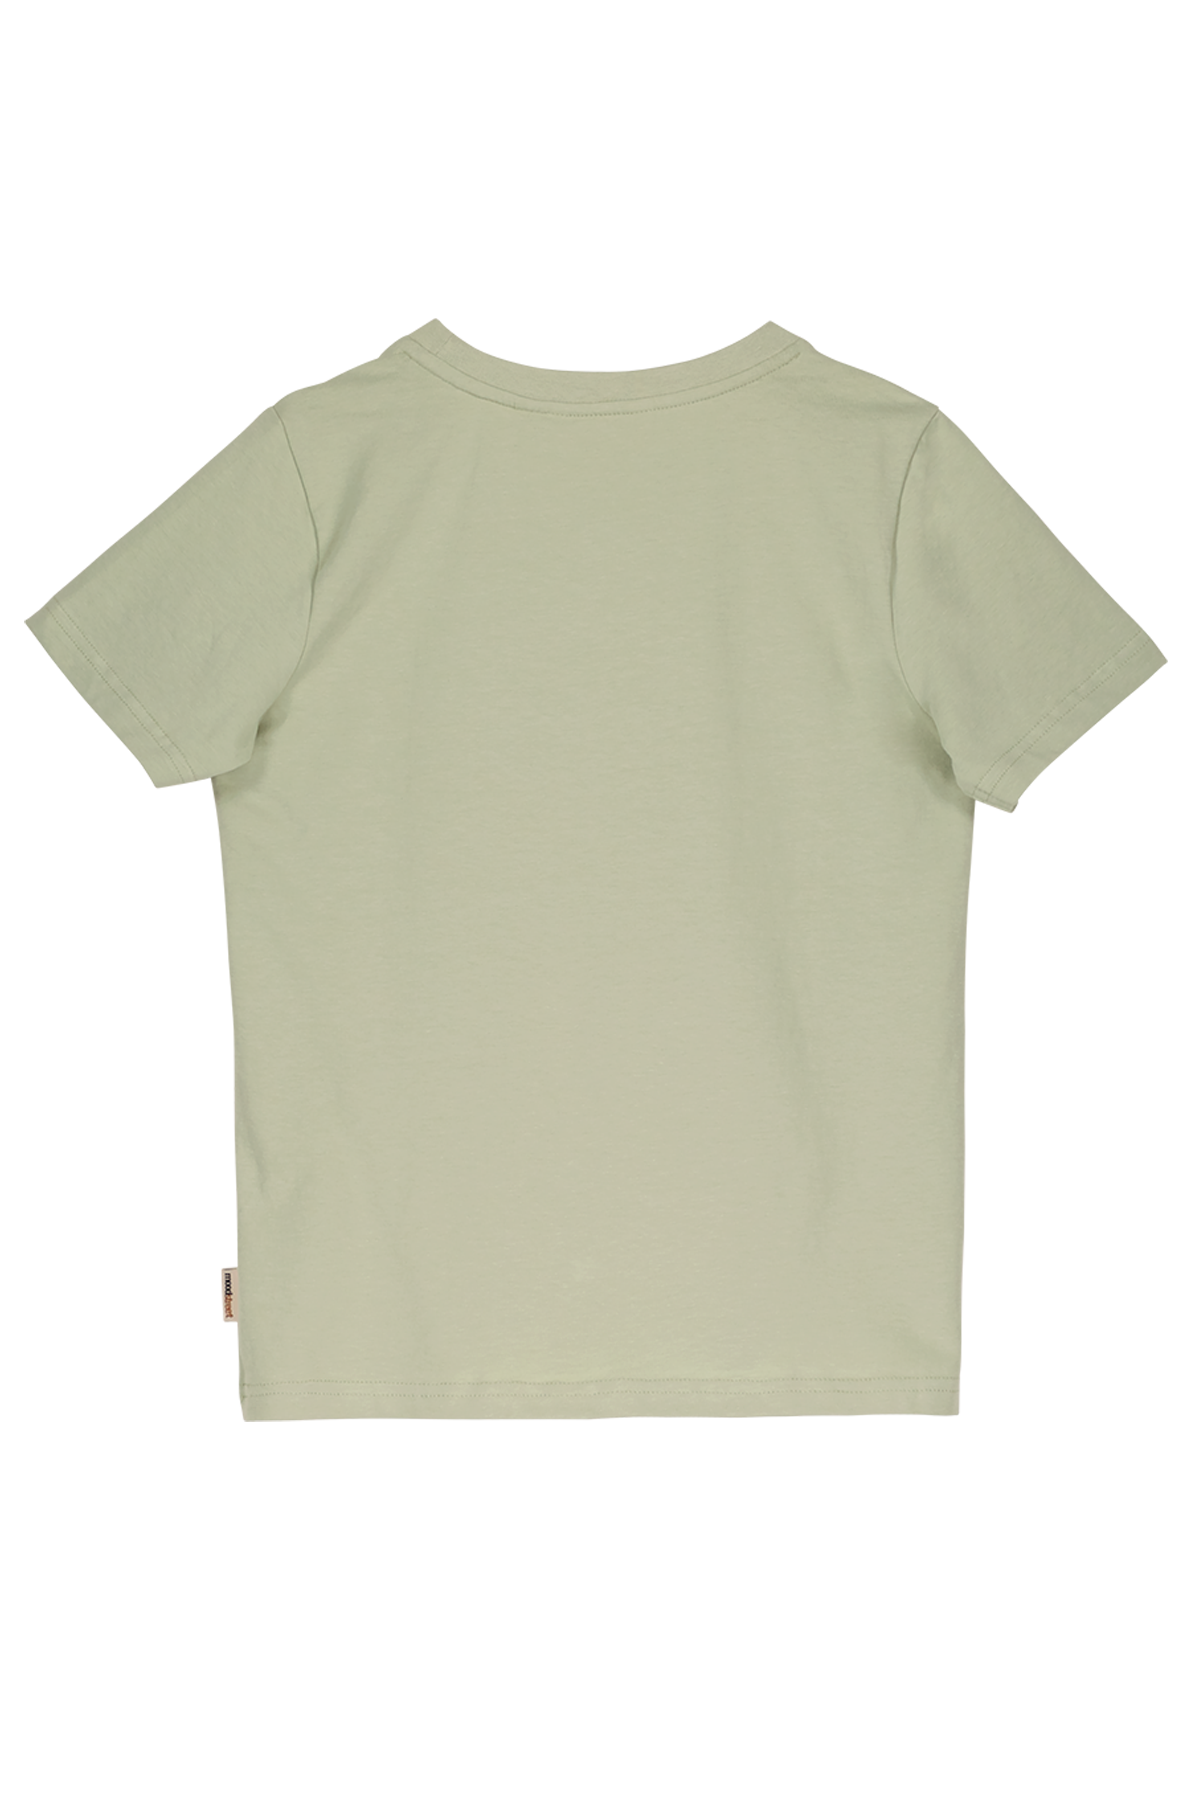 T-Shirt Boys t-shirt misty green